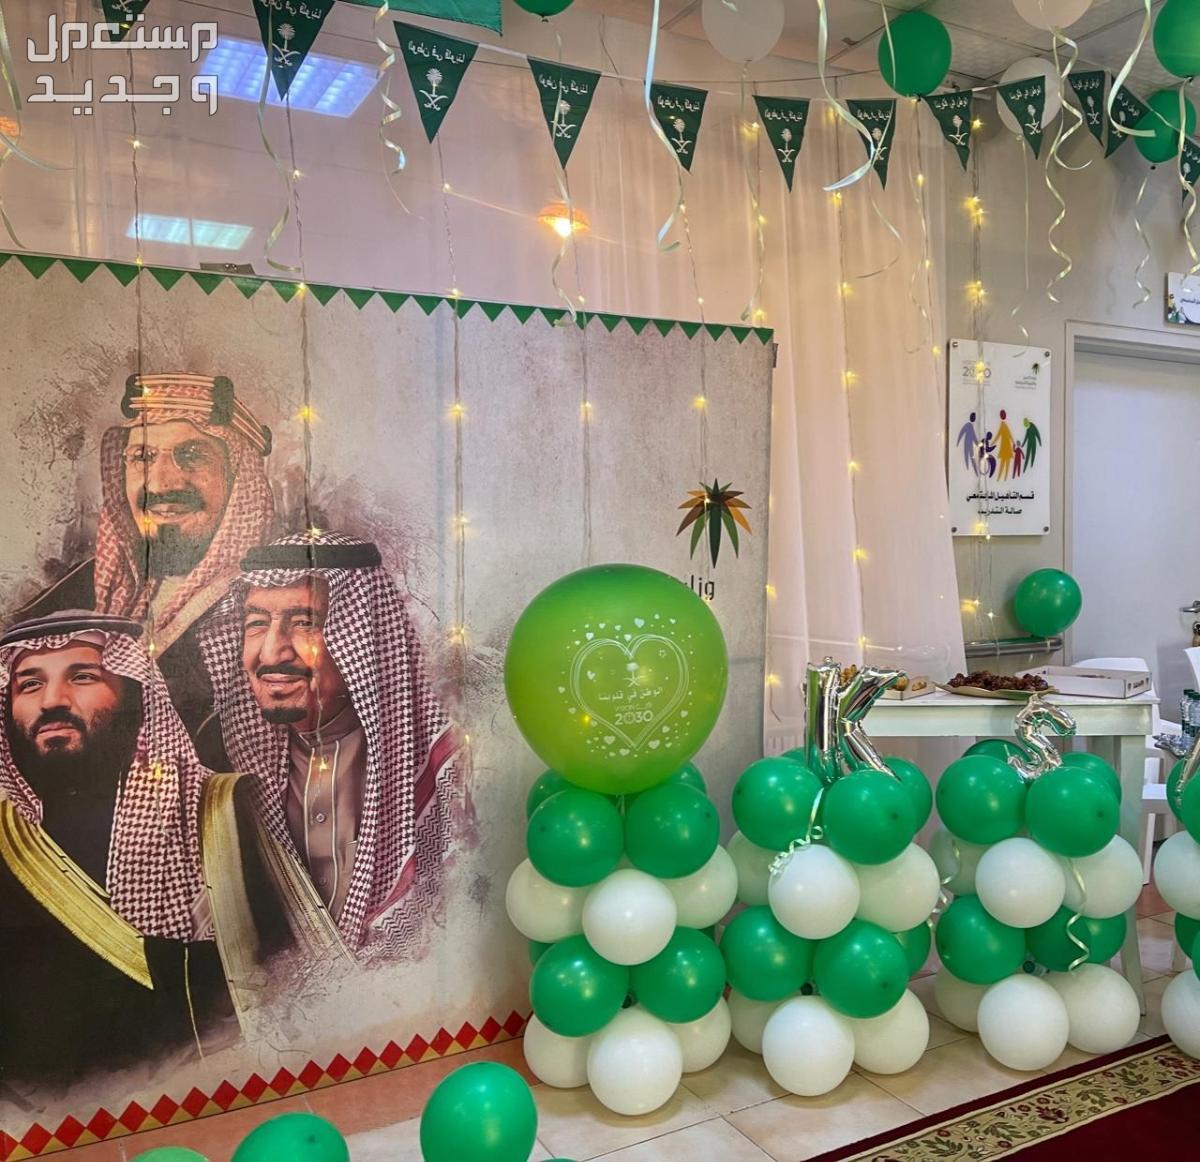 صور ديكورات داخلية بمناسبة اليوم الوطني السعودي 1445 في الأردن ديكورات داخلية بمناسبة اليوم الوطني